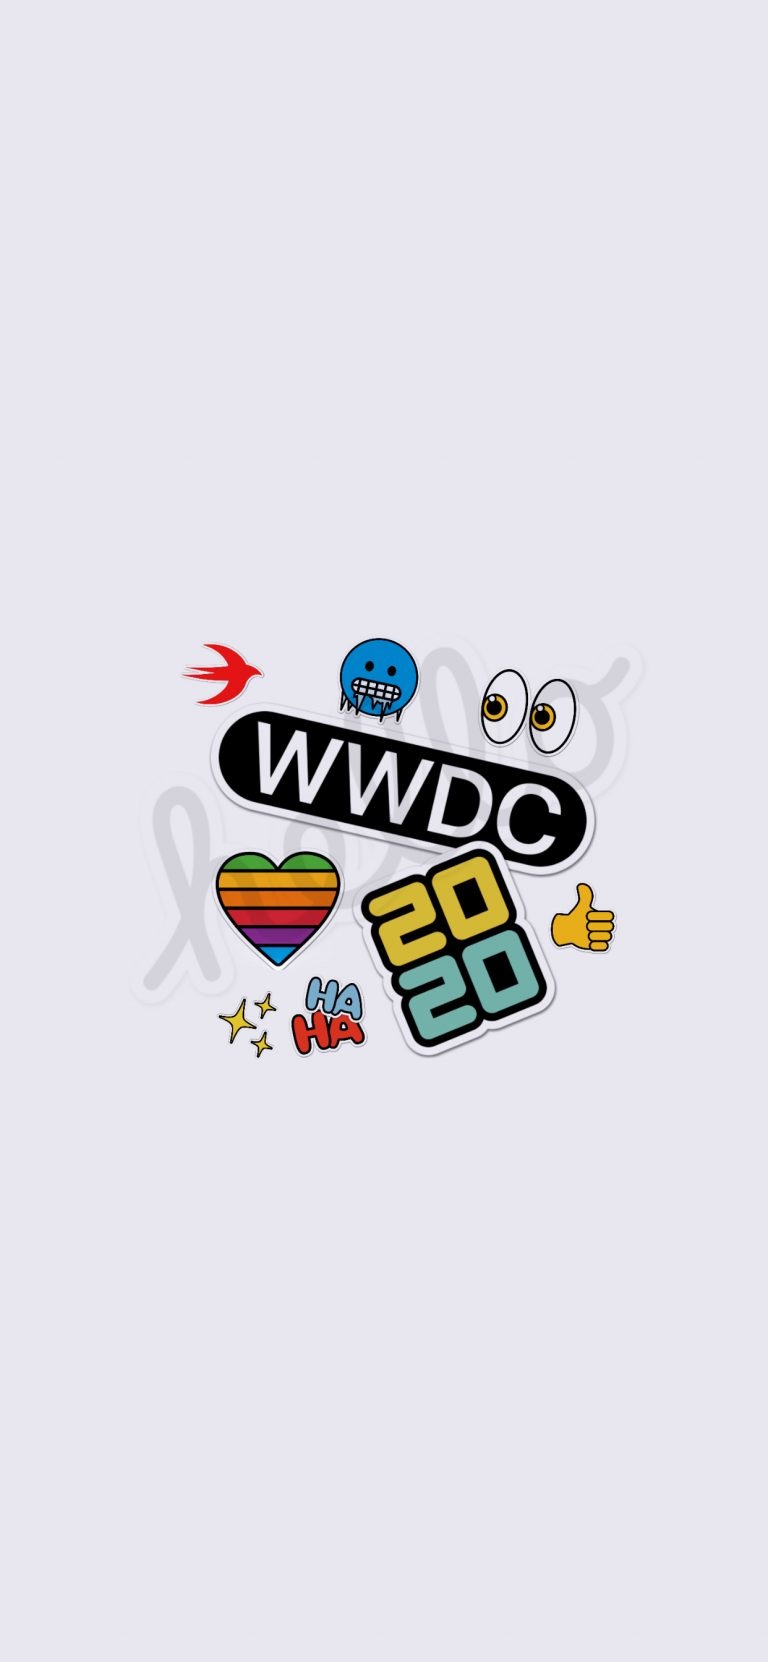 دانلود والپیپر مراسم WWDC 2020 اپل برای آیفون ۴